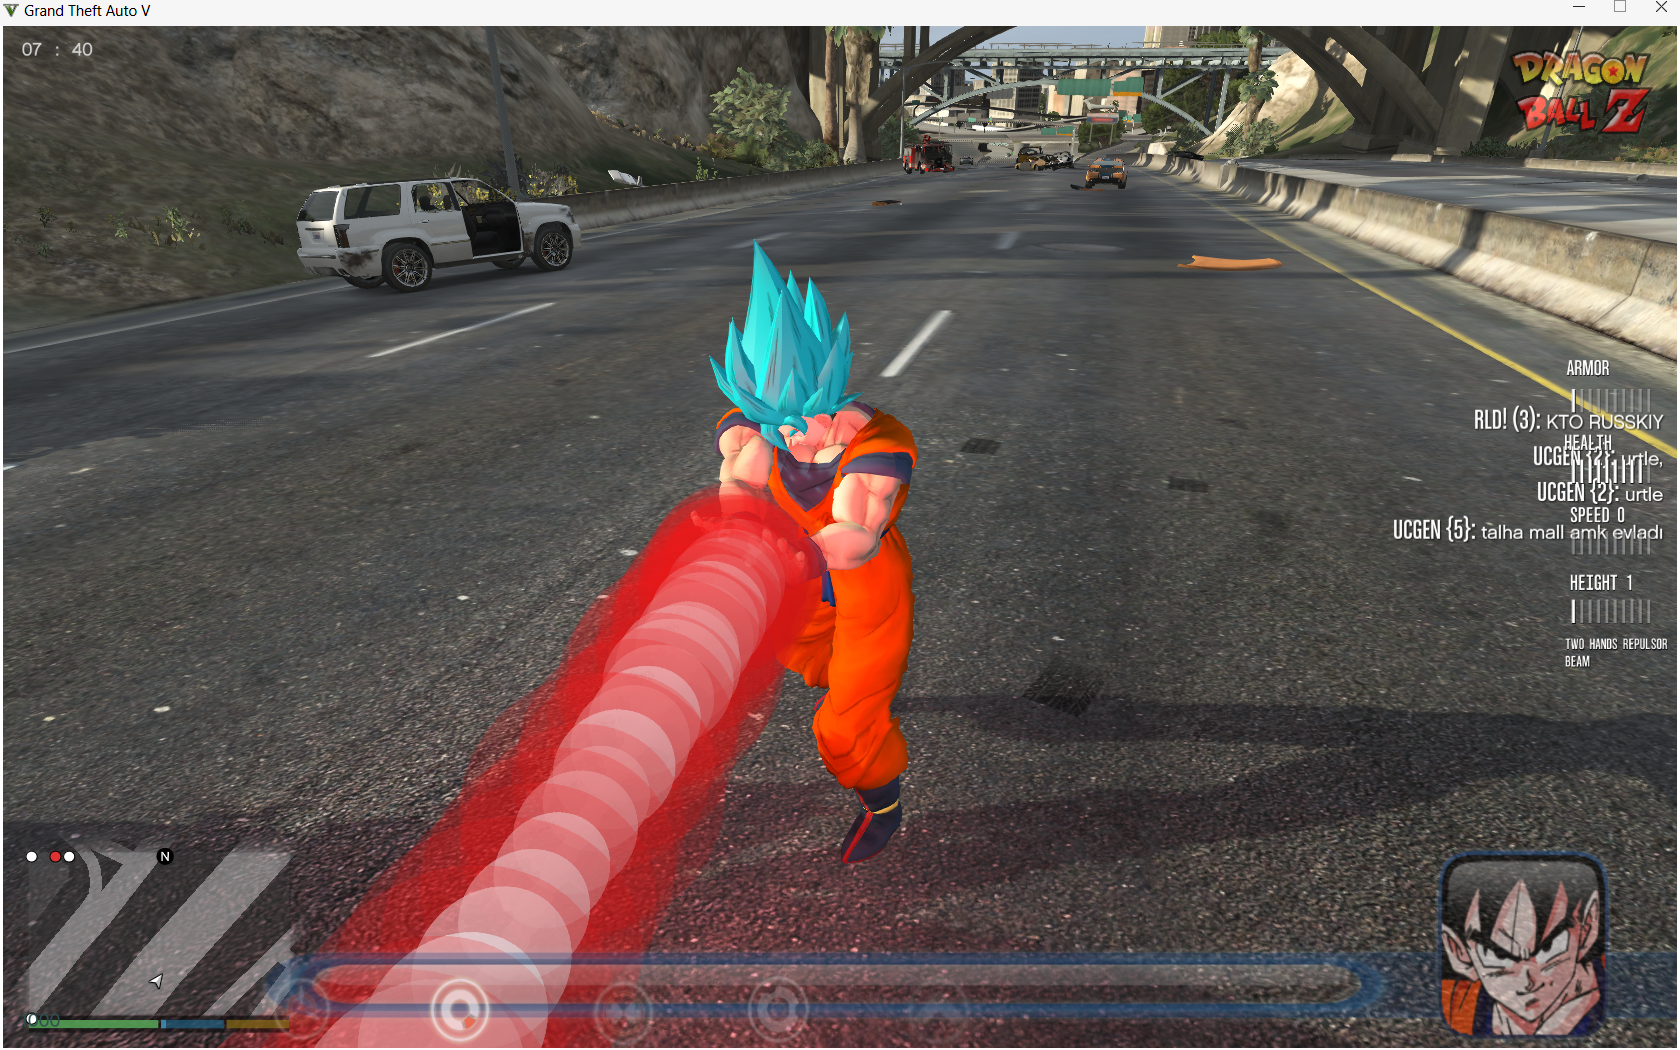 Image 11 - Dragon Ball Z Goku With Powers, Sounds and HUD ...